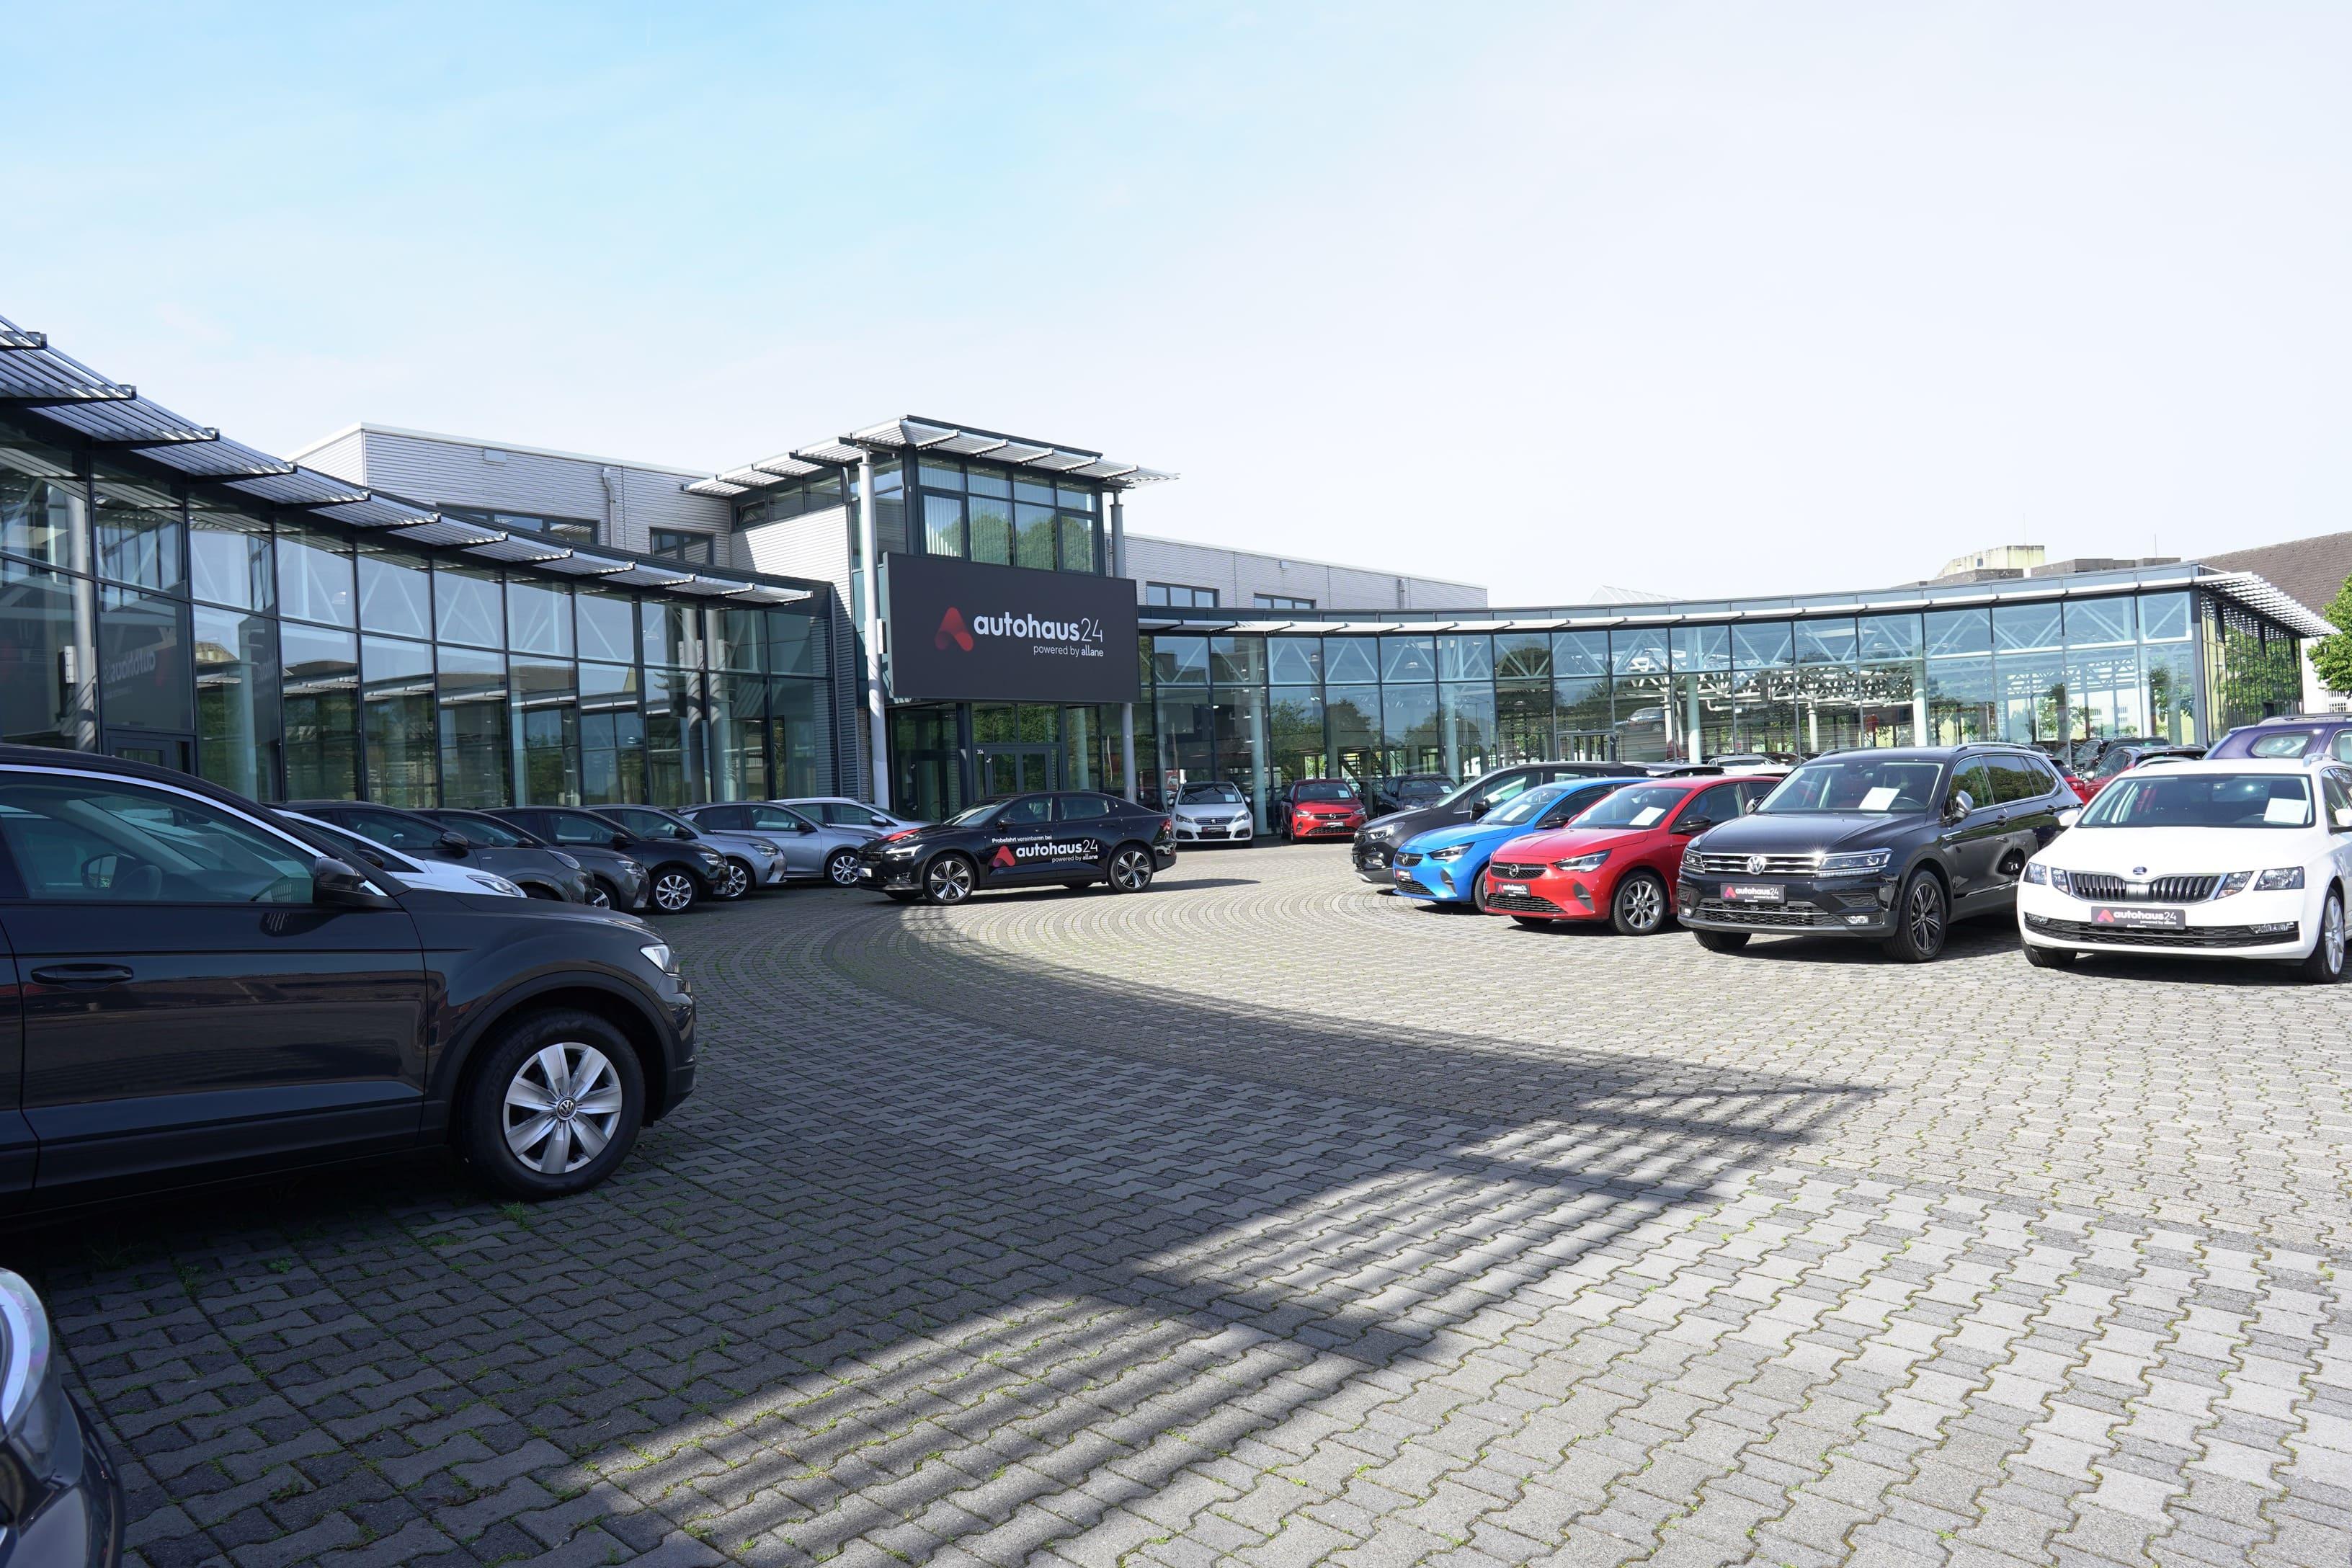 Der Außenbereich des Autohaus24 Standorts in Wuppertal